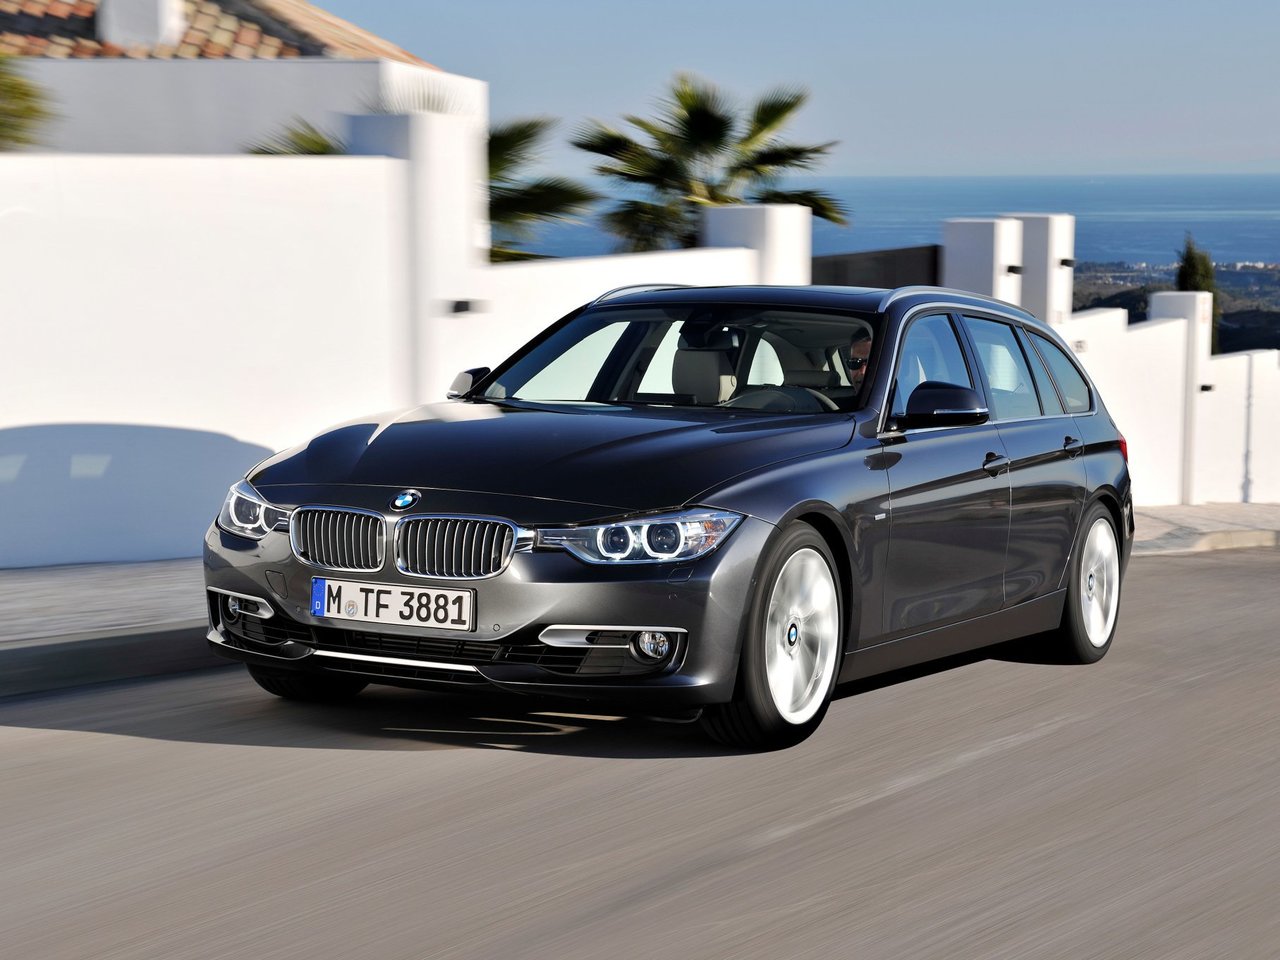 Расход газа шести комплектаций универсала пять дверей BMW 3 серия. Разница стоимости заправки газом и бензином. Автономный пробег до и после установки ГБО.